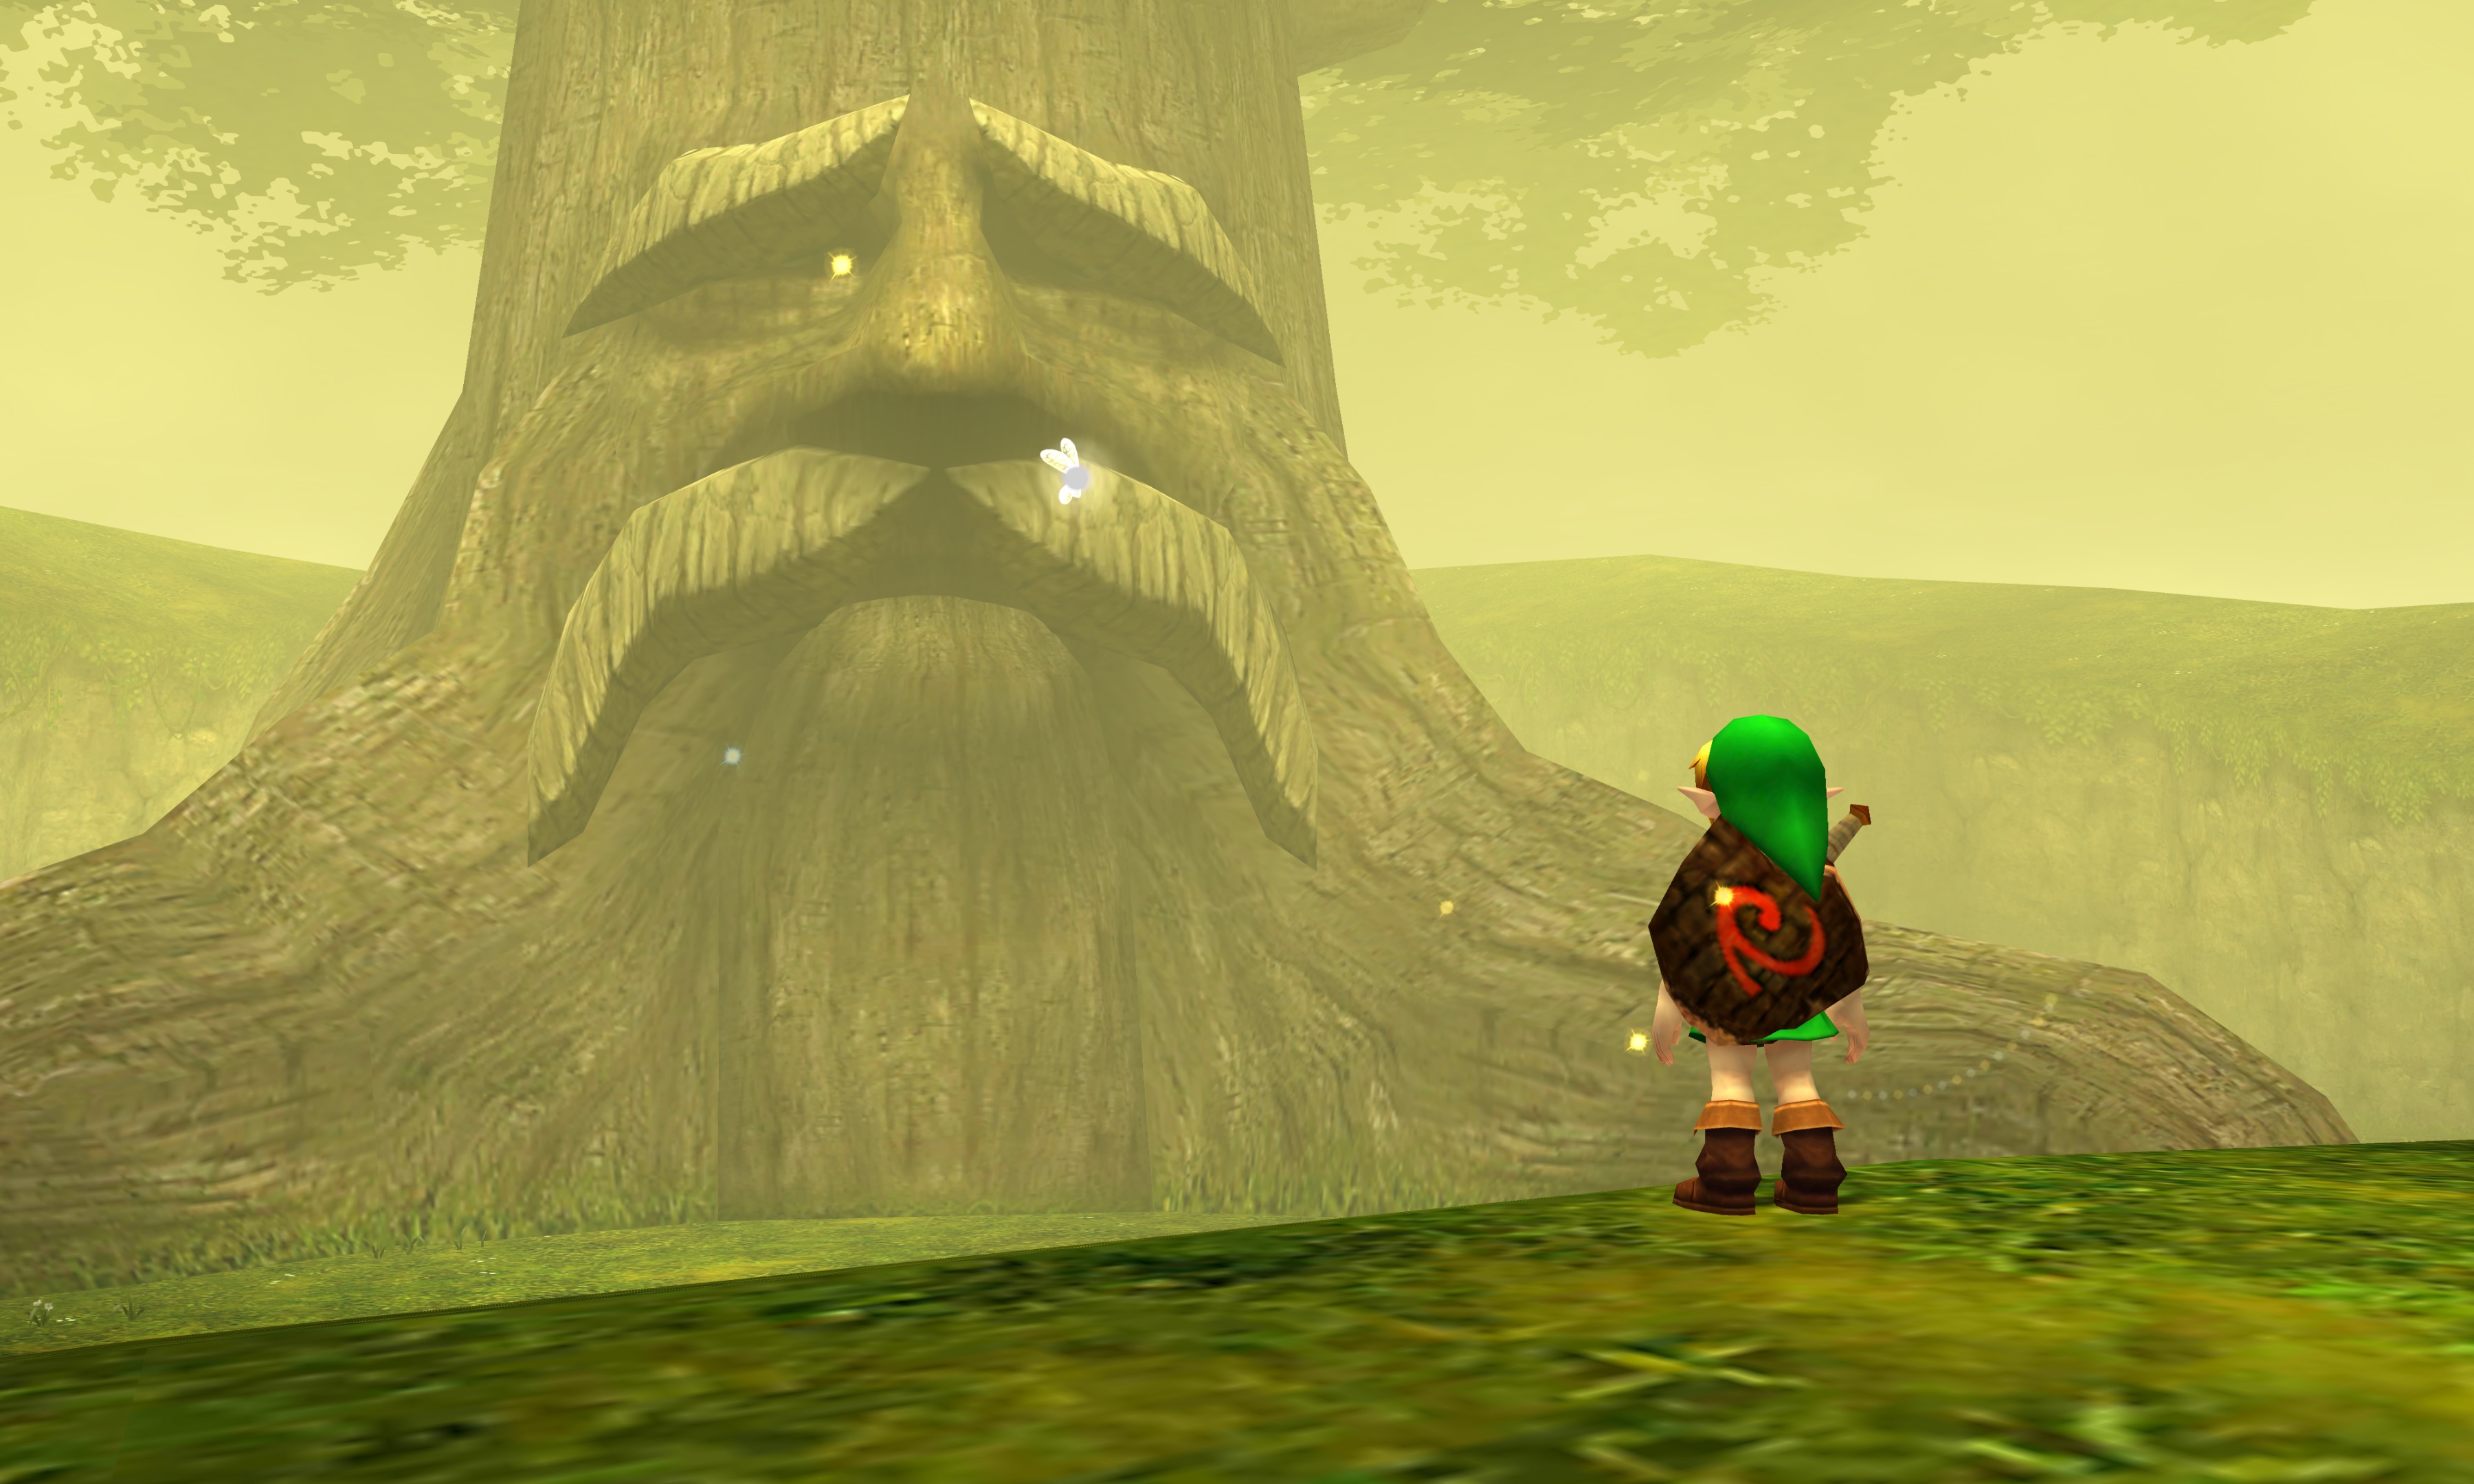 Zelda - Ocarina of Time 3D